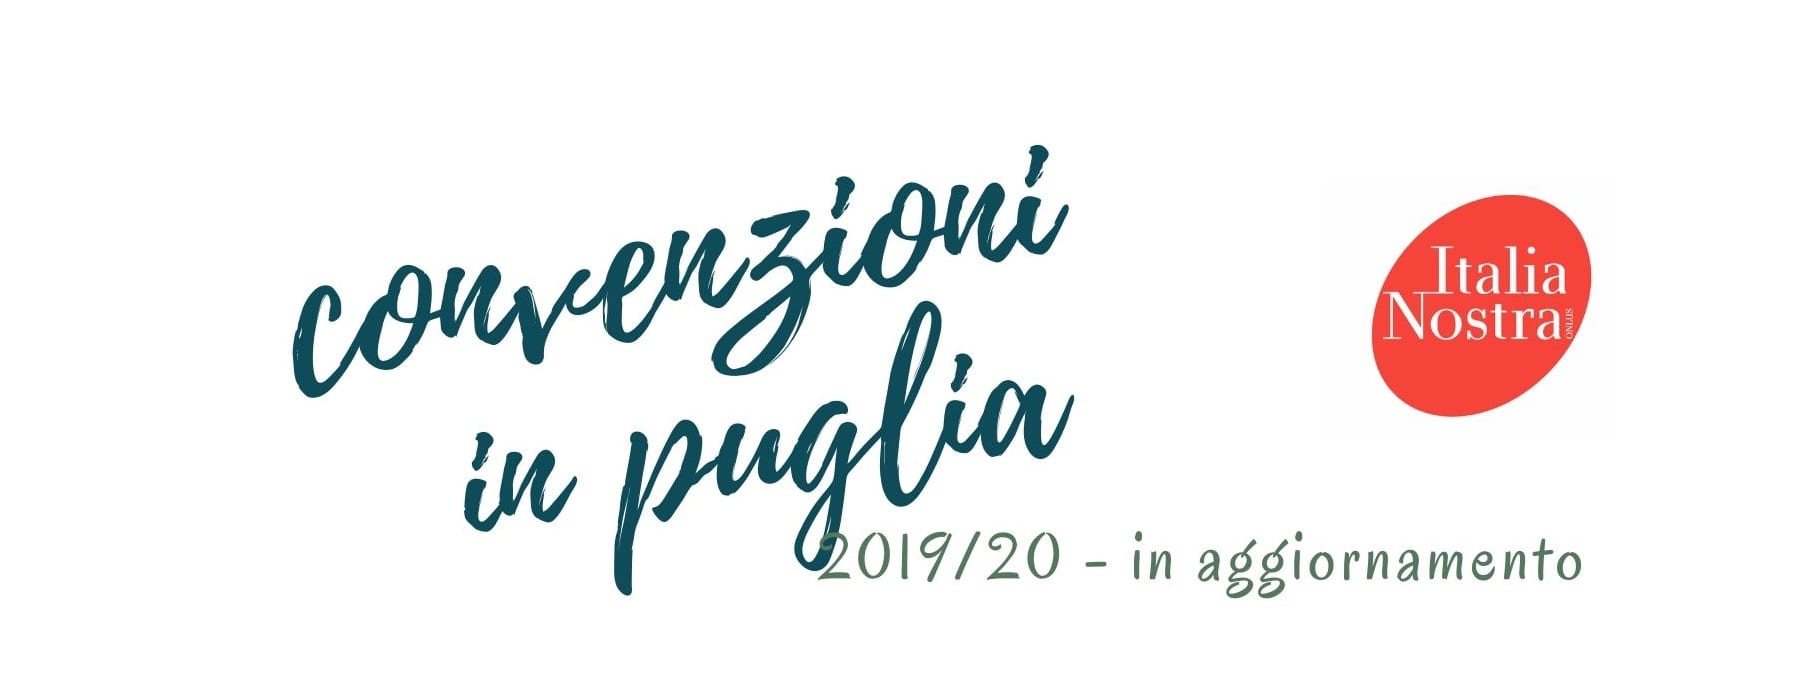 Convenzioni Italia Nostra sezione Puglia